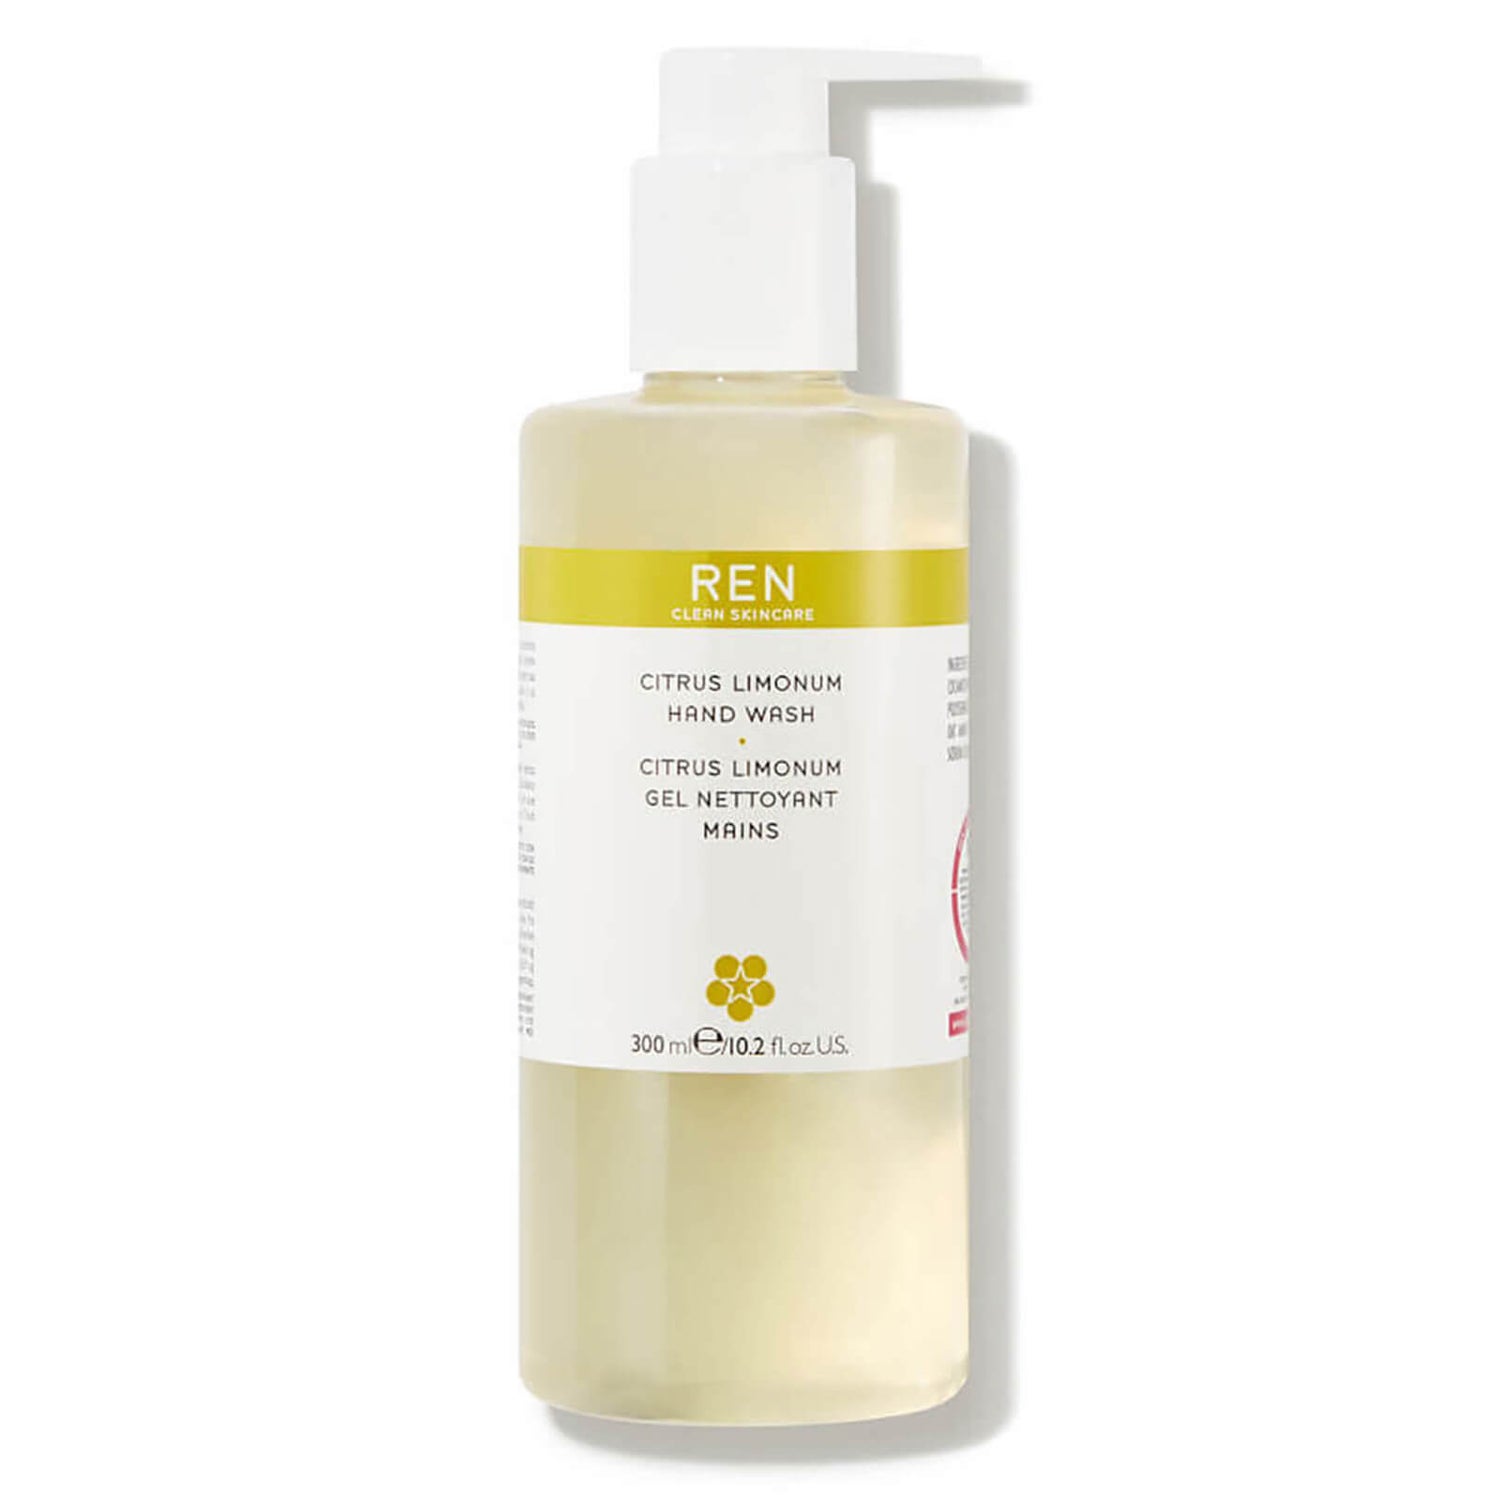 REN Clean Skincare Citrus Limonum mydło do rąk (300 ml)